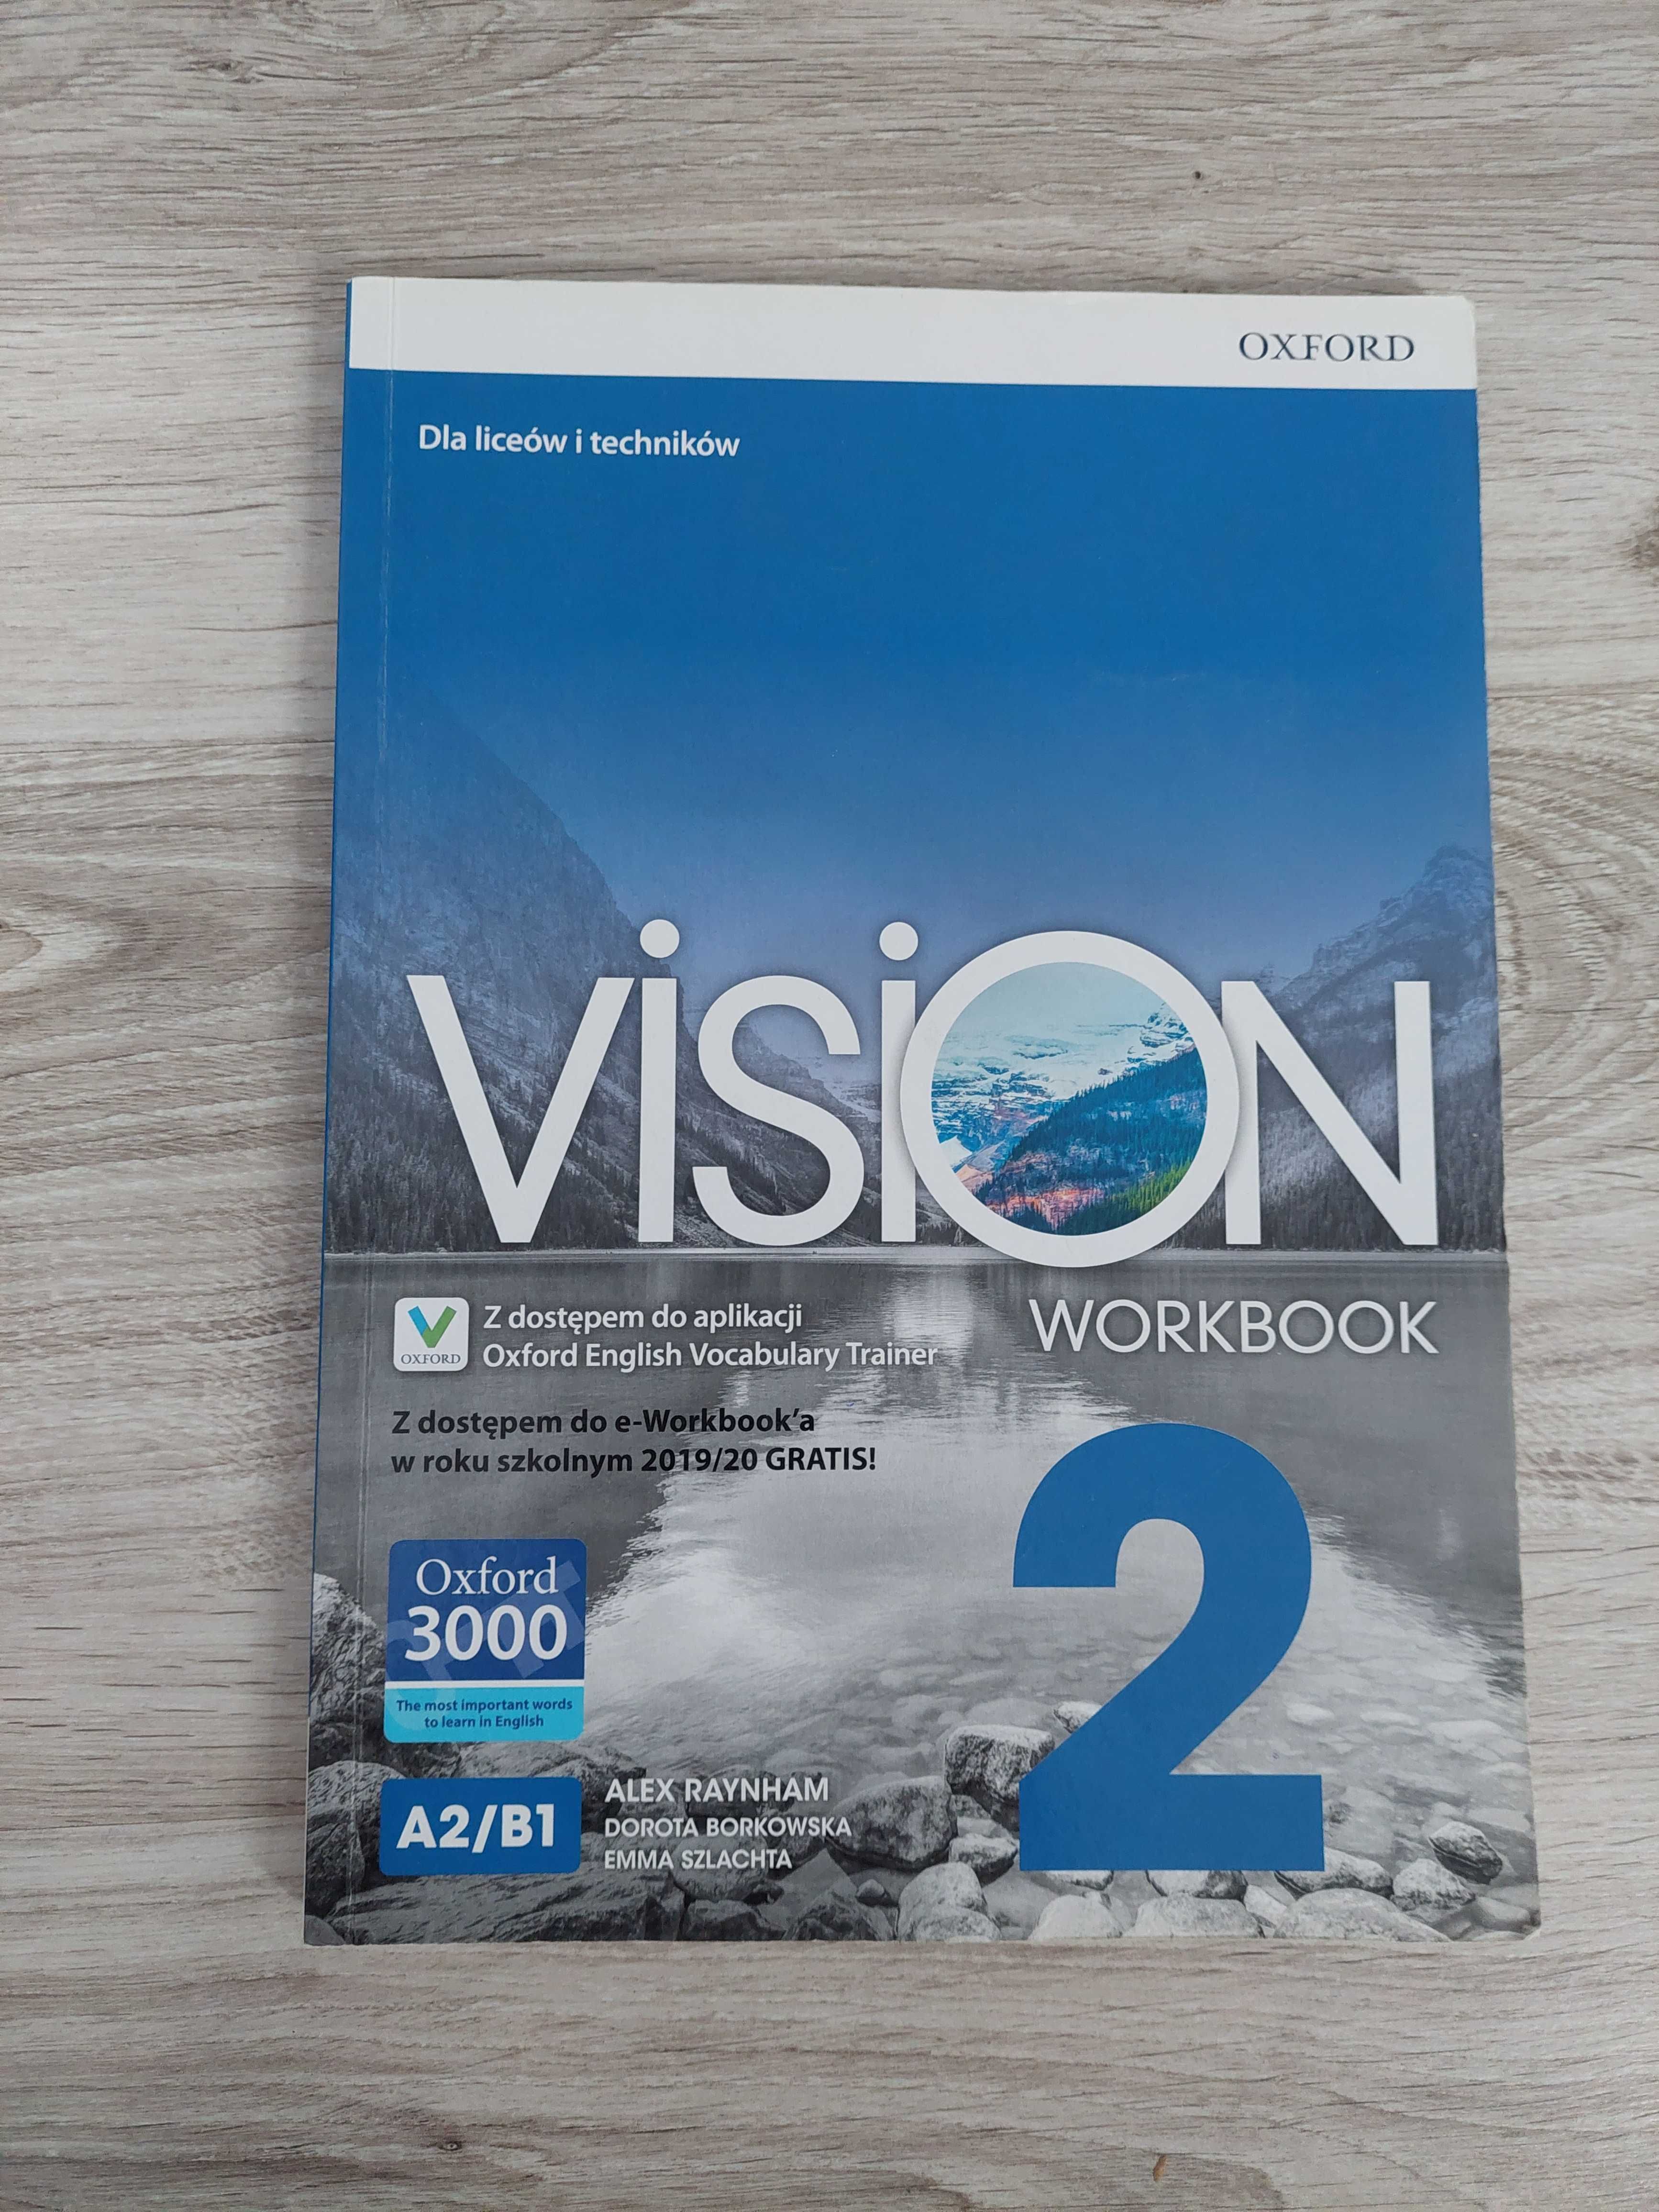 Vision Workbook 2 OXFORD